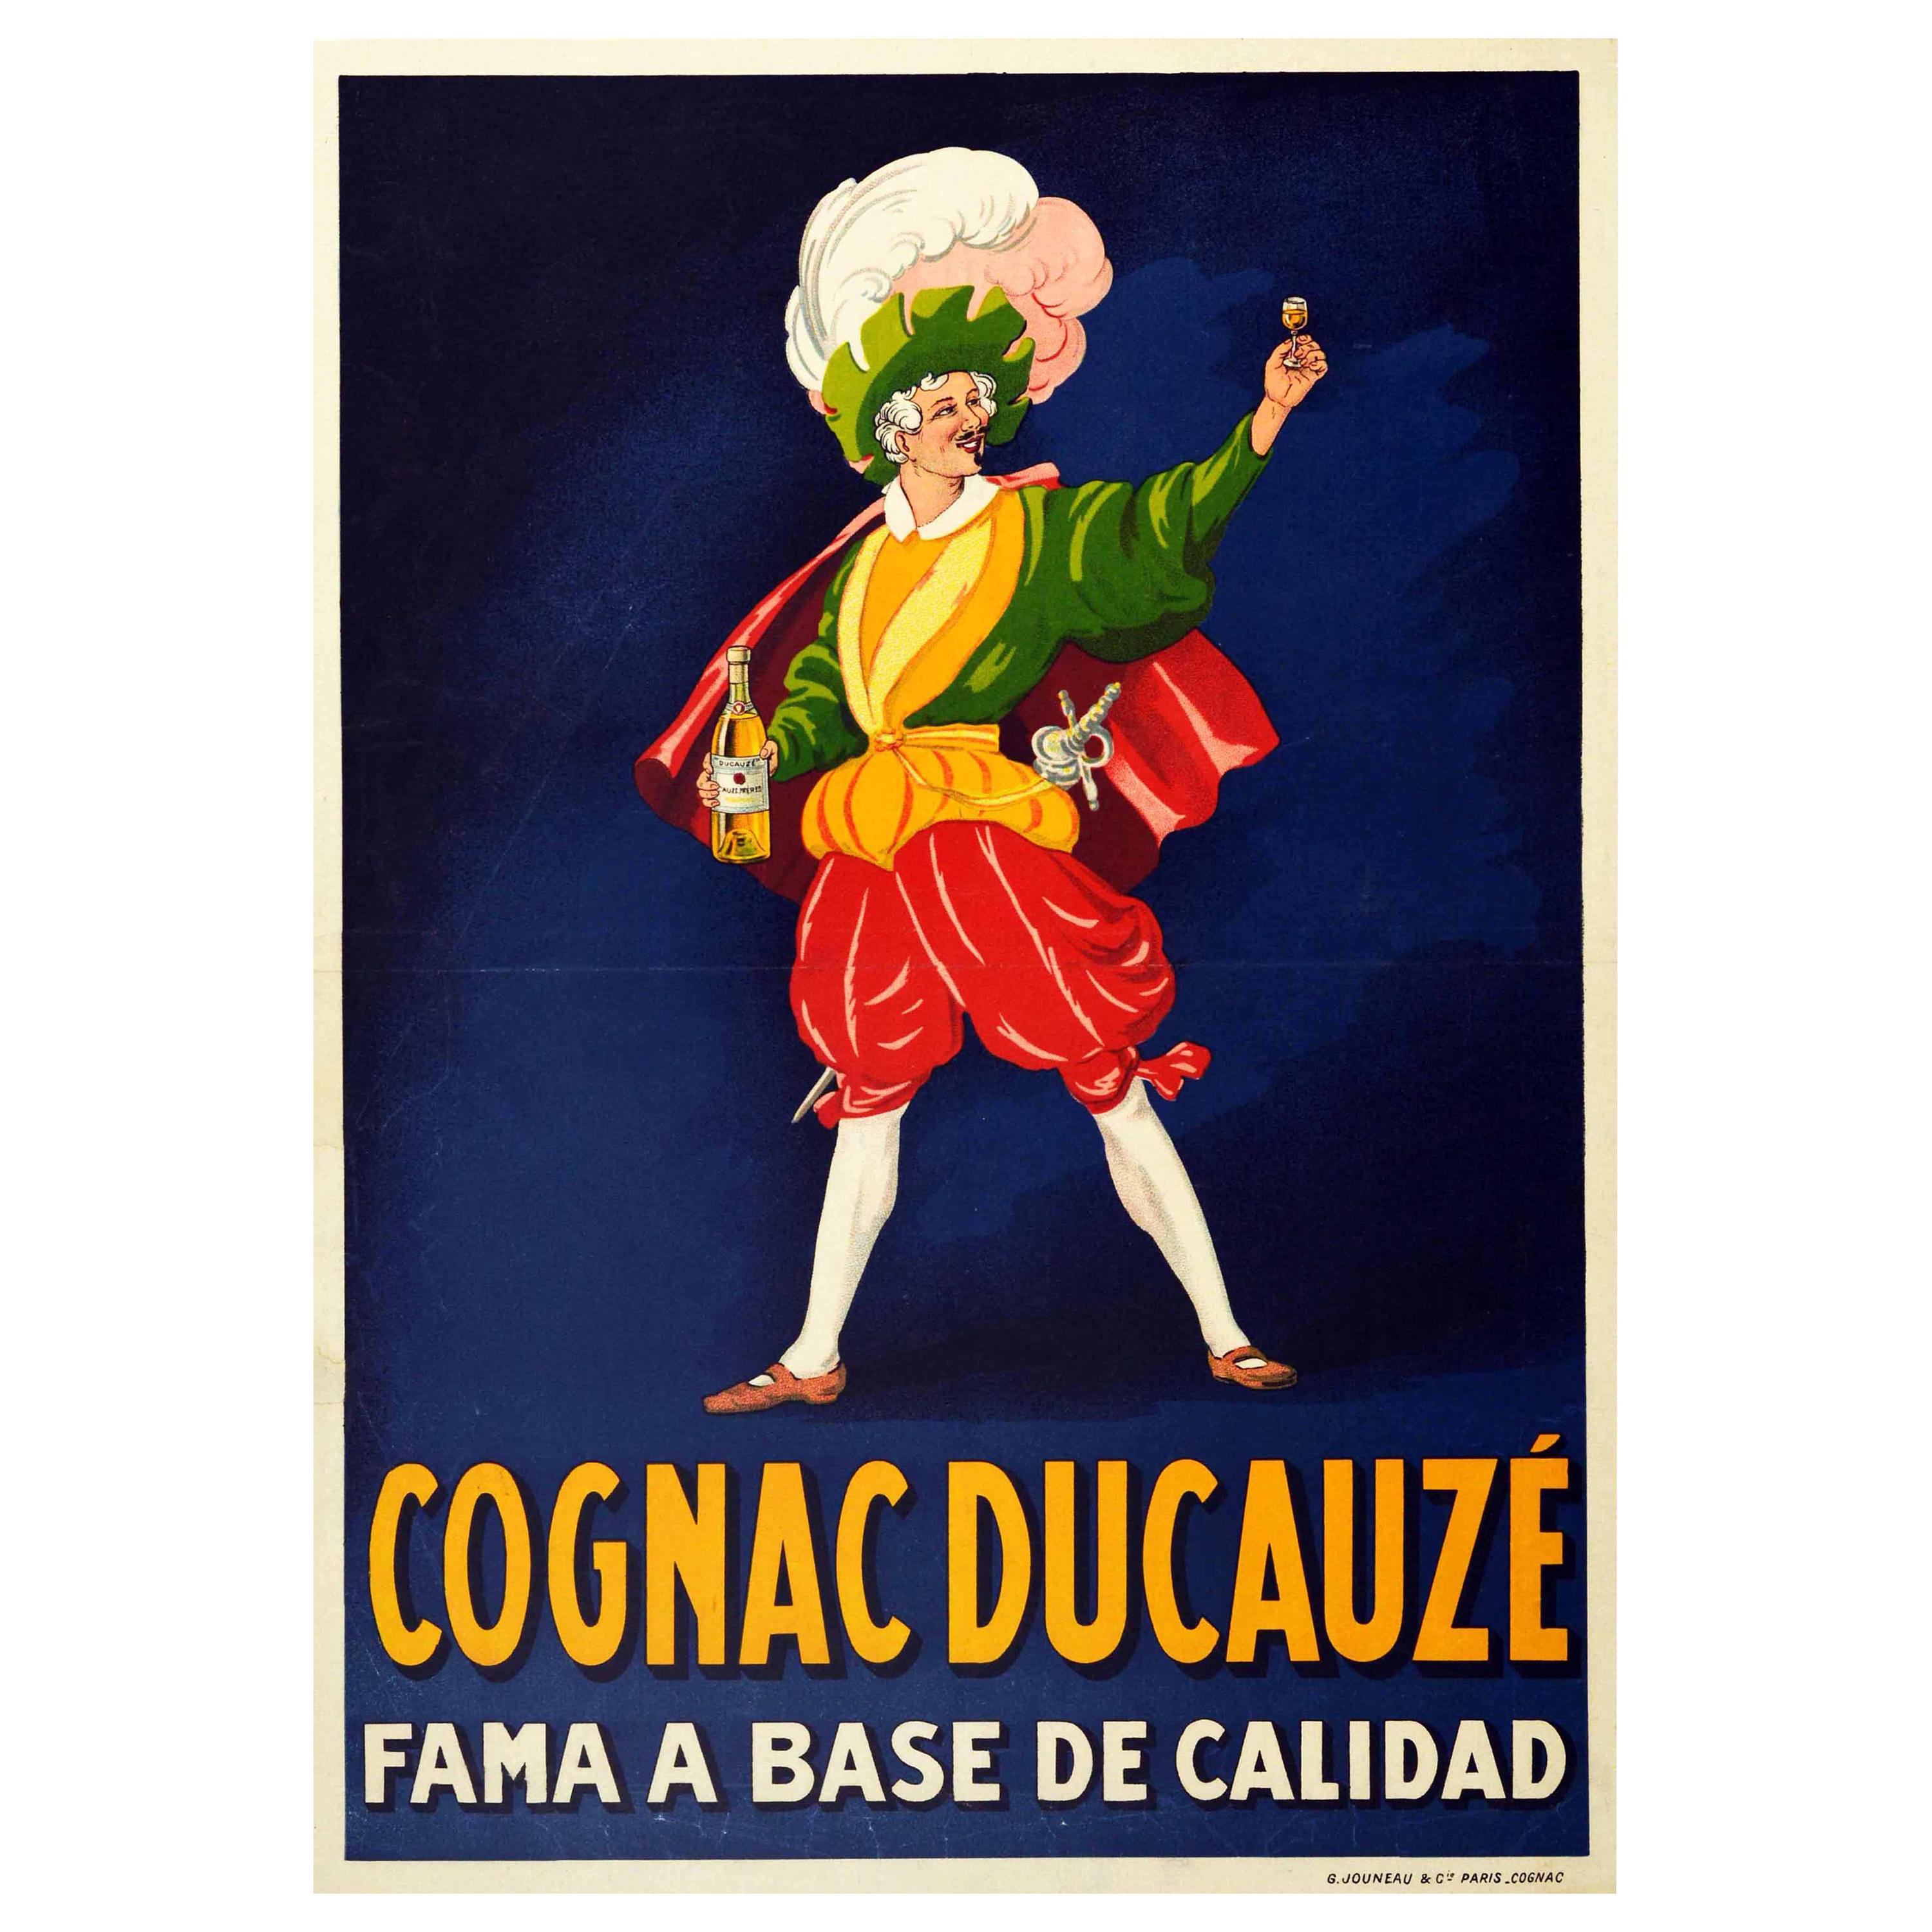 Original Antique Drink Poster Cognac Ducauze Fama A Base De Calidad Fame Quality For Sale